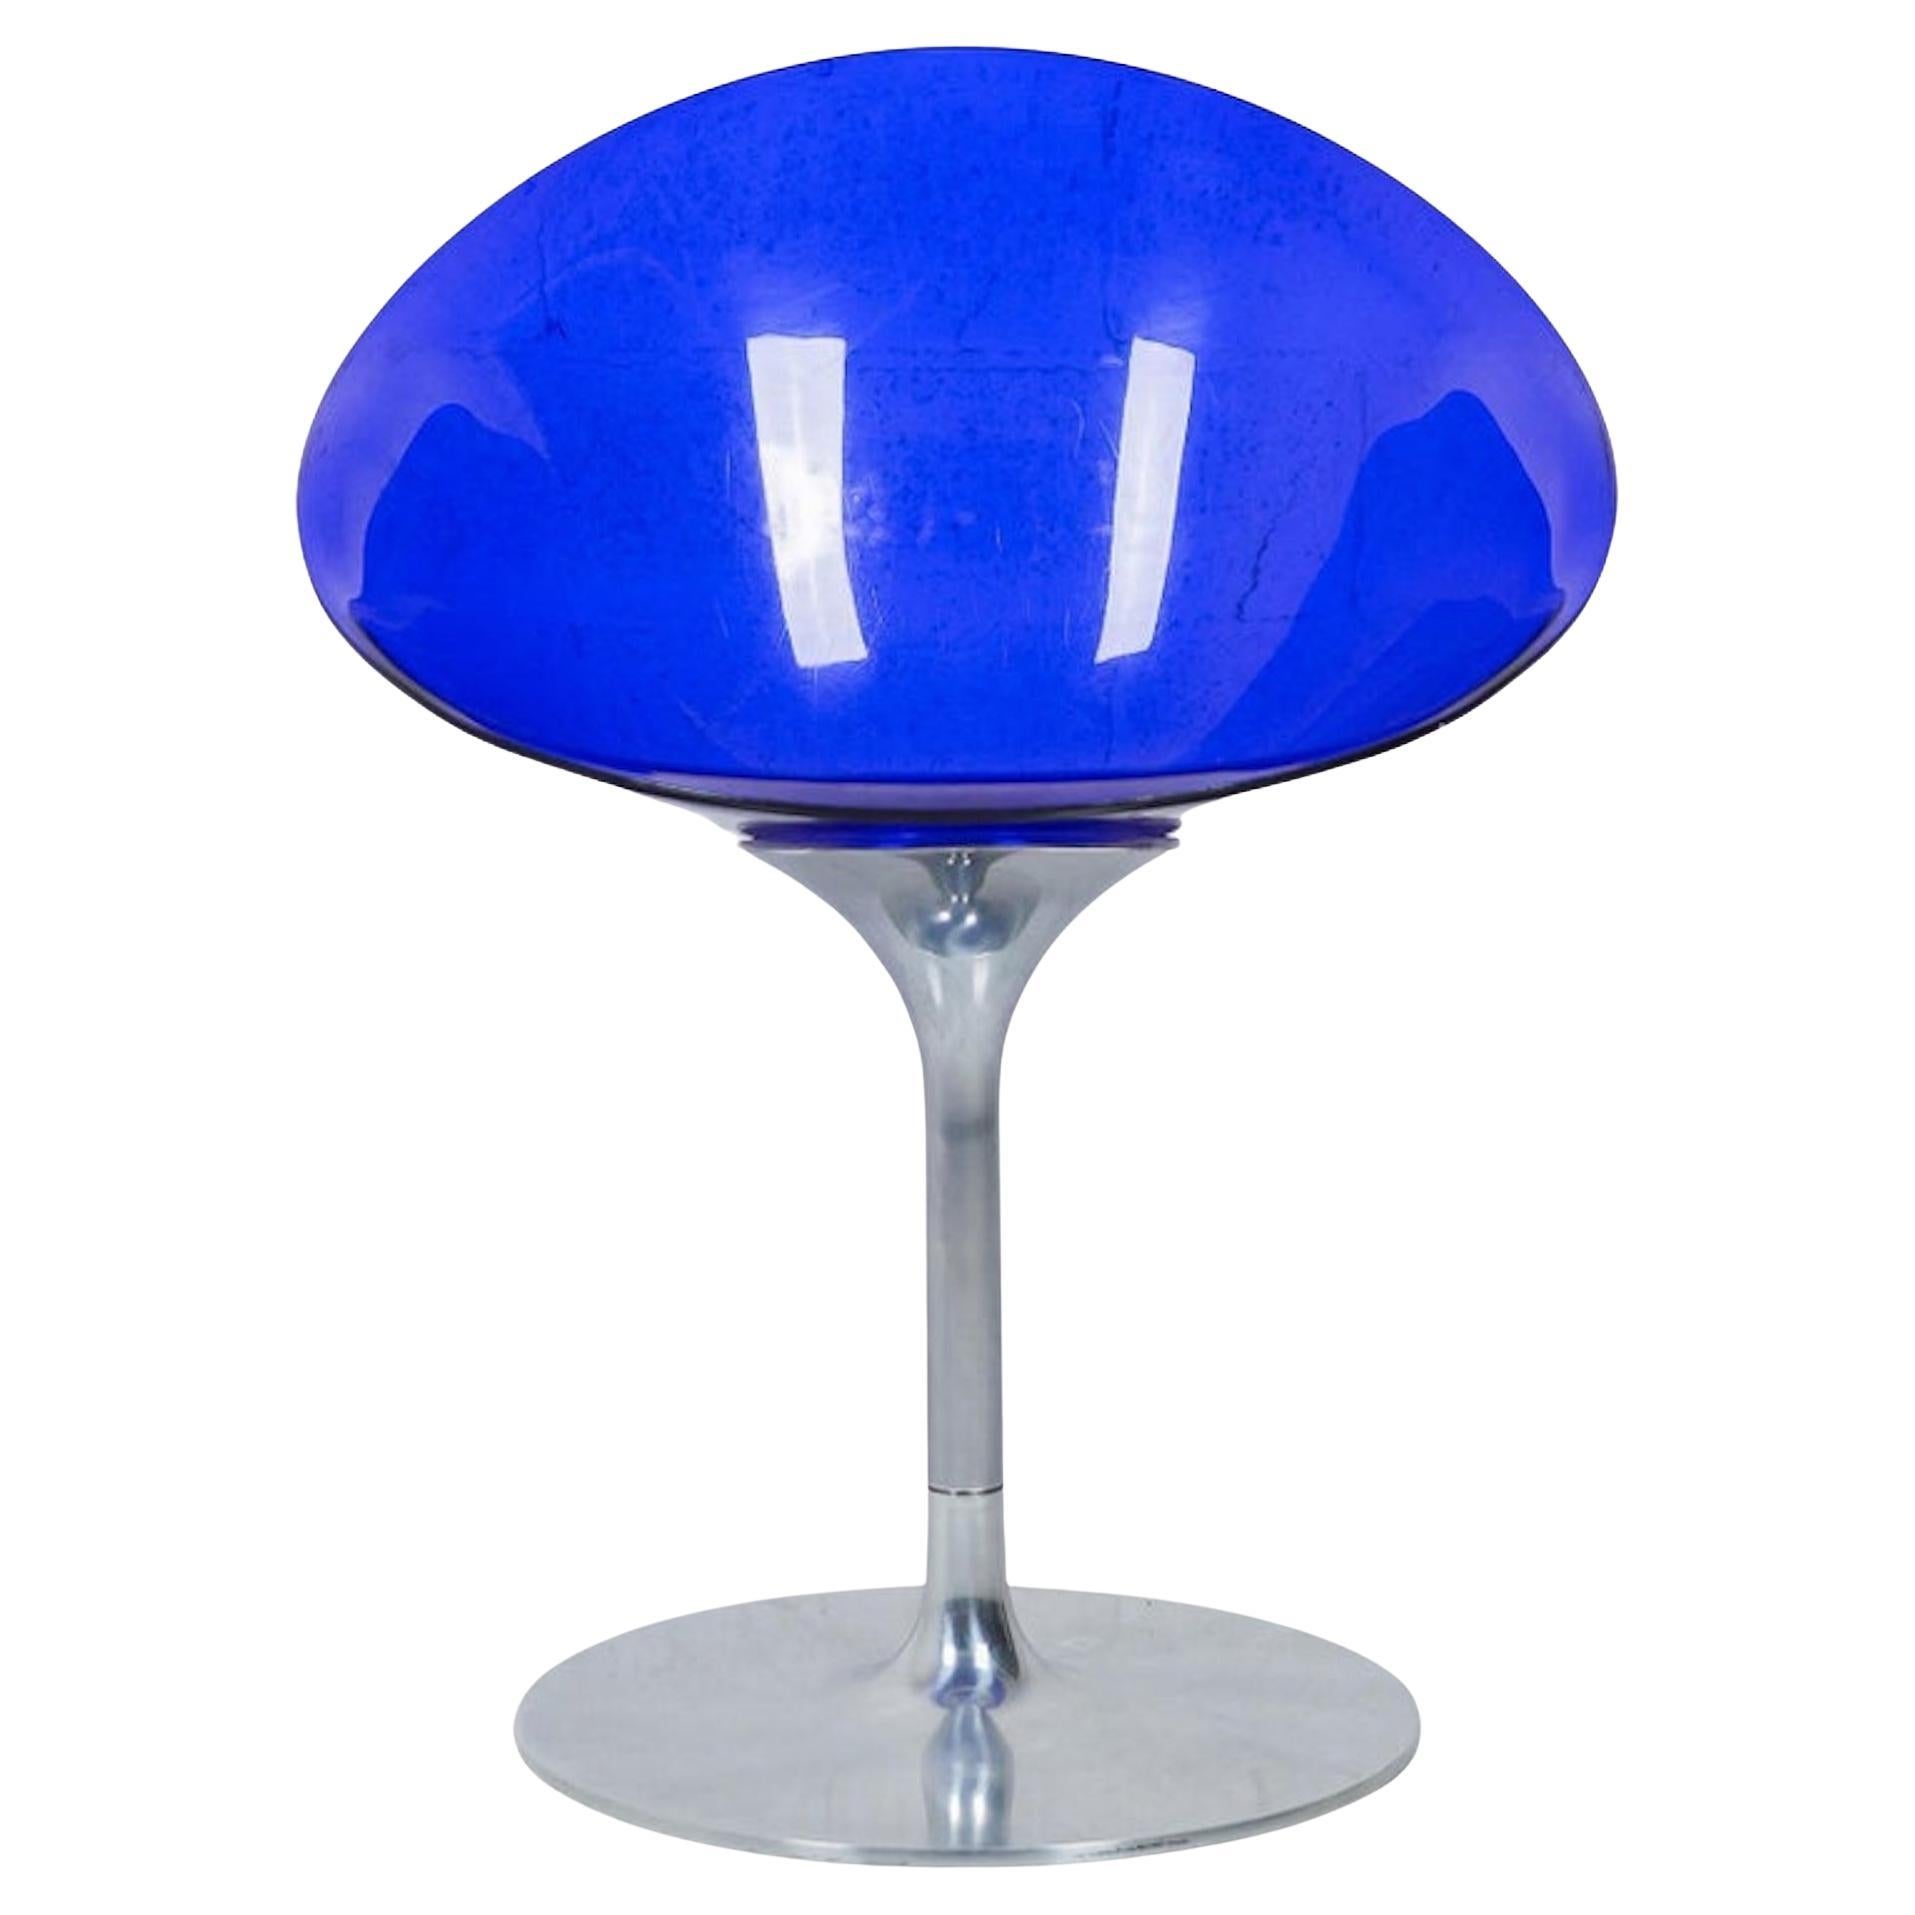 Drehbarer blauer Eros-Stuhl von Philippe Starck für Kartell 90er Jahre